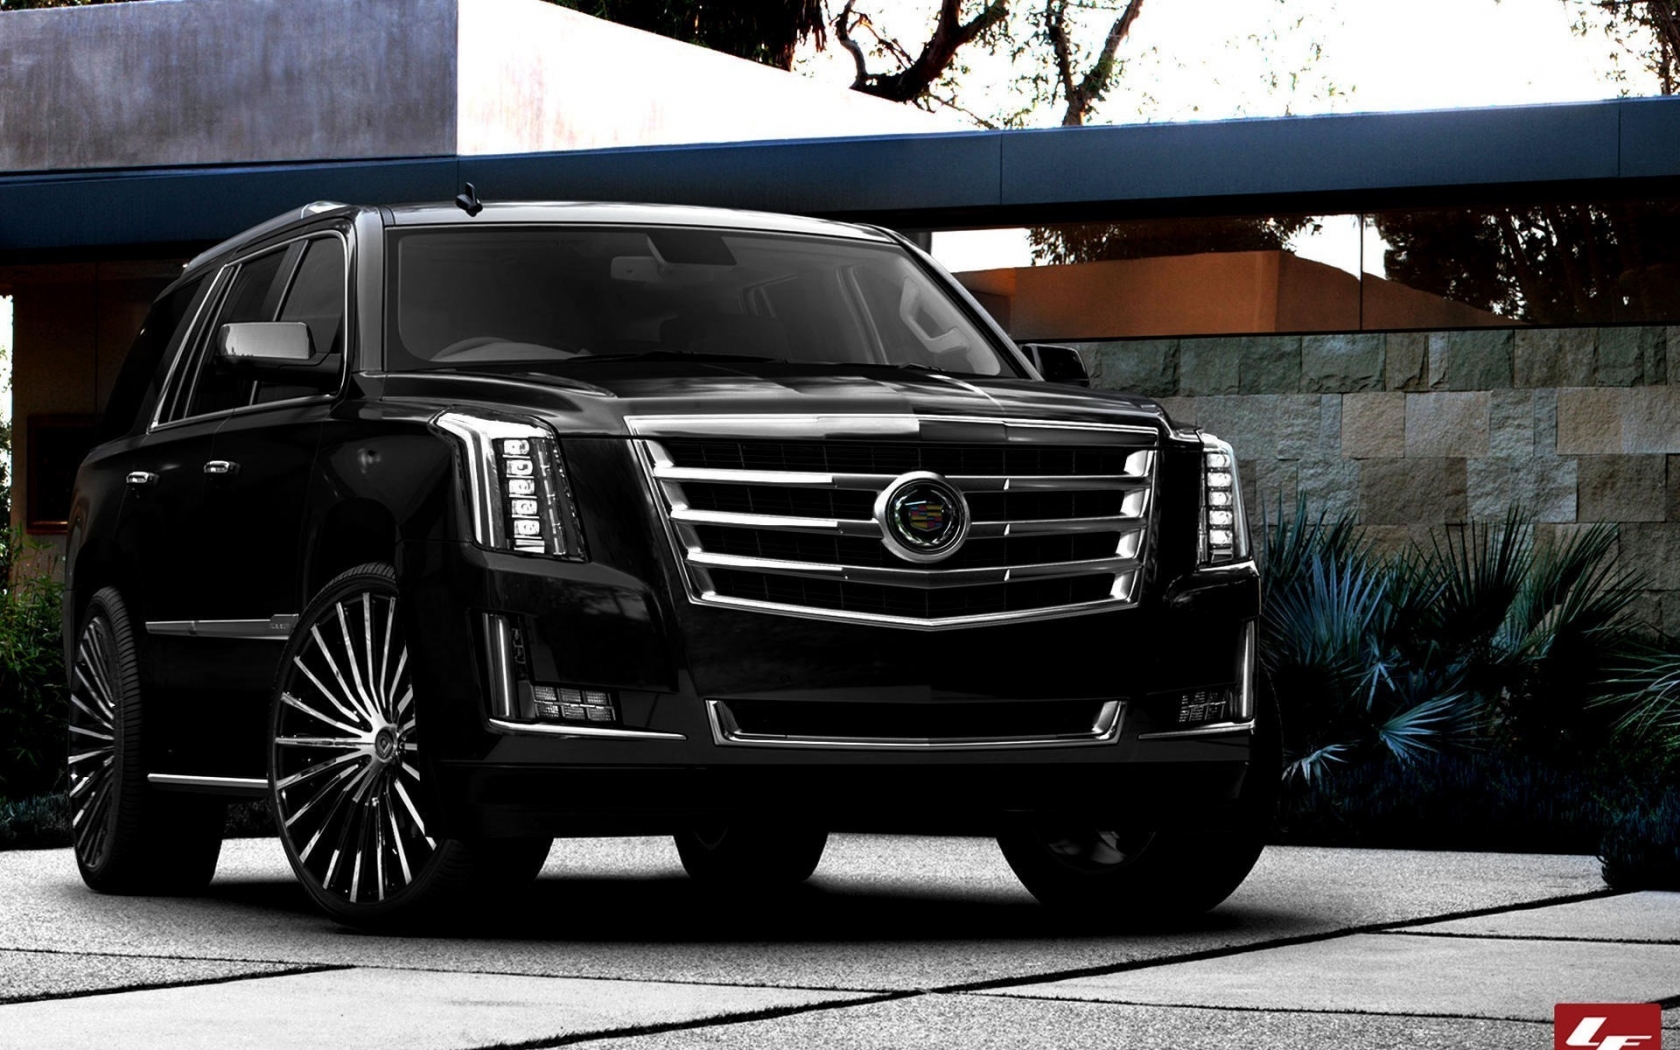  2015 Black Cadillac Escalade for 1680 x 1050 widescreen resolution